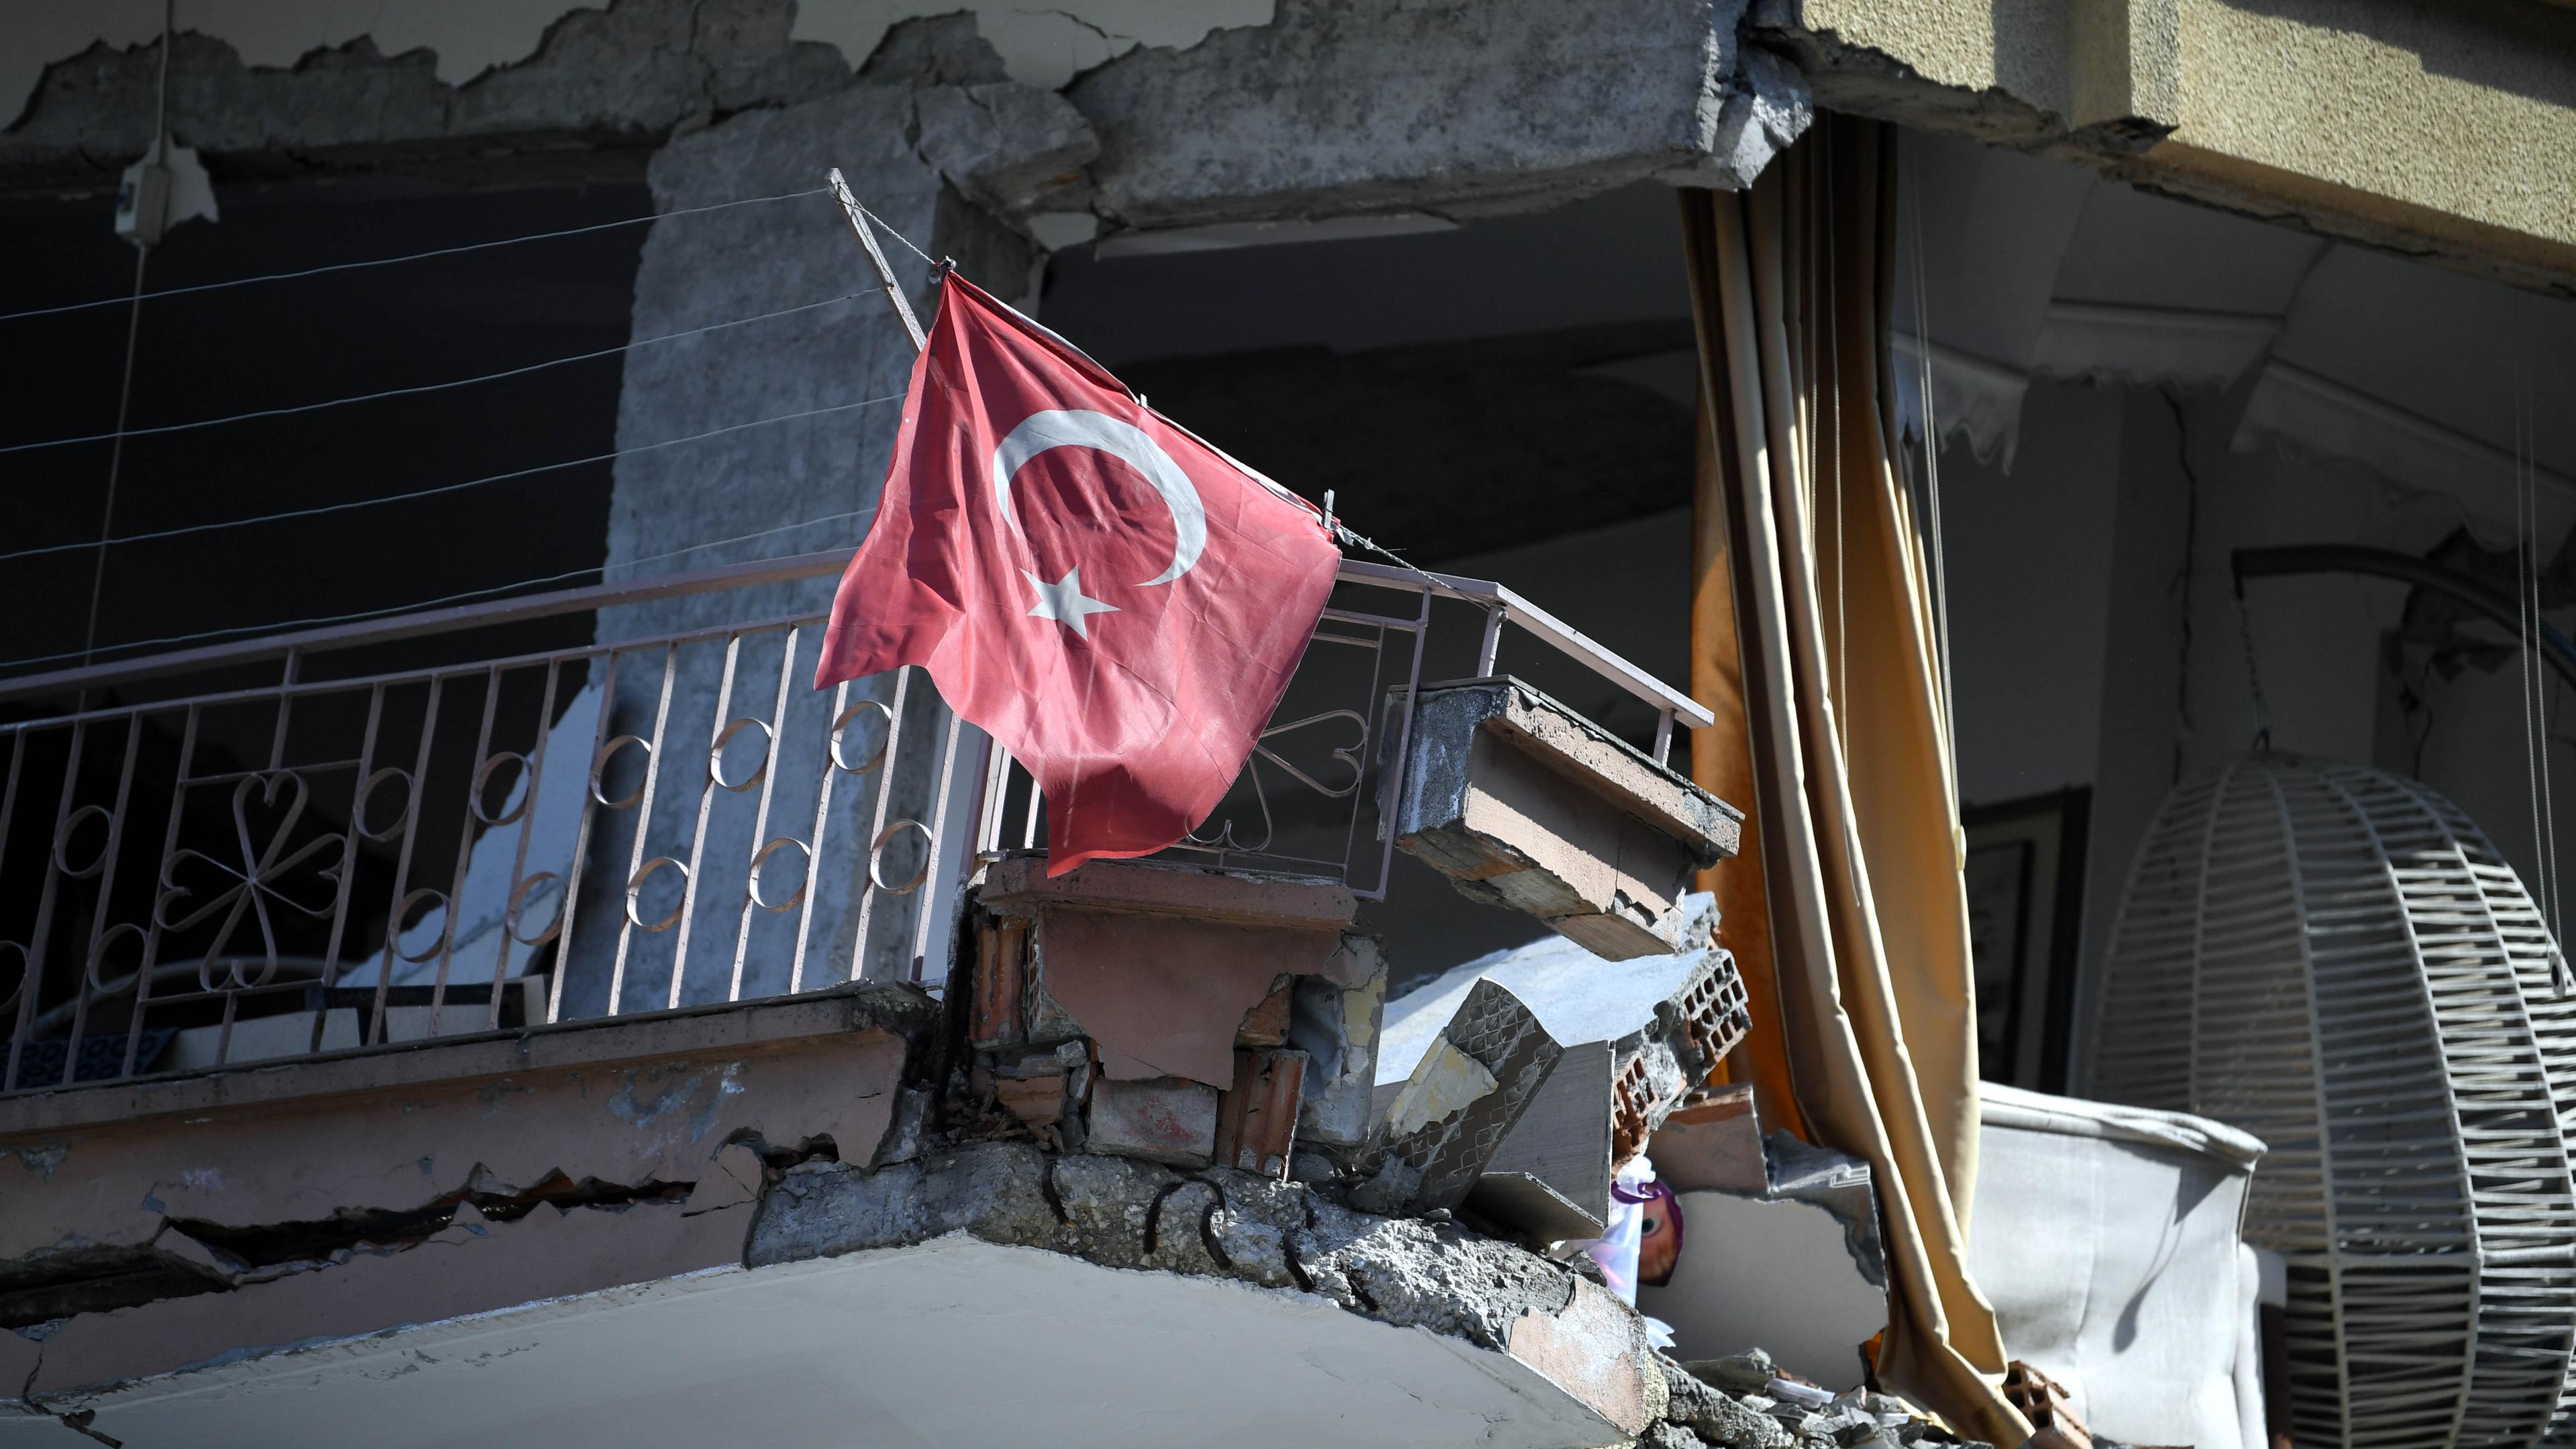 Türkei, Antakya: Das von der chinesischen Staatsagentur Xinhua verbreitete Bild zeigt eine türkische Nationalfahne in den Trümmern eines nach dem Erdbeben zerstörten Gebäudes.